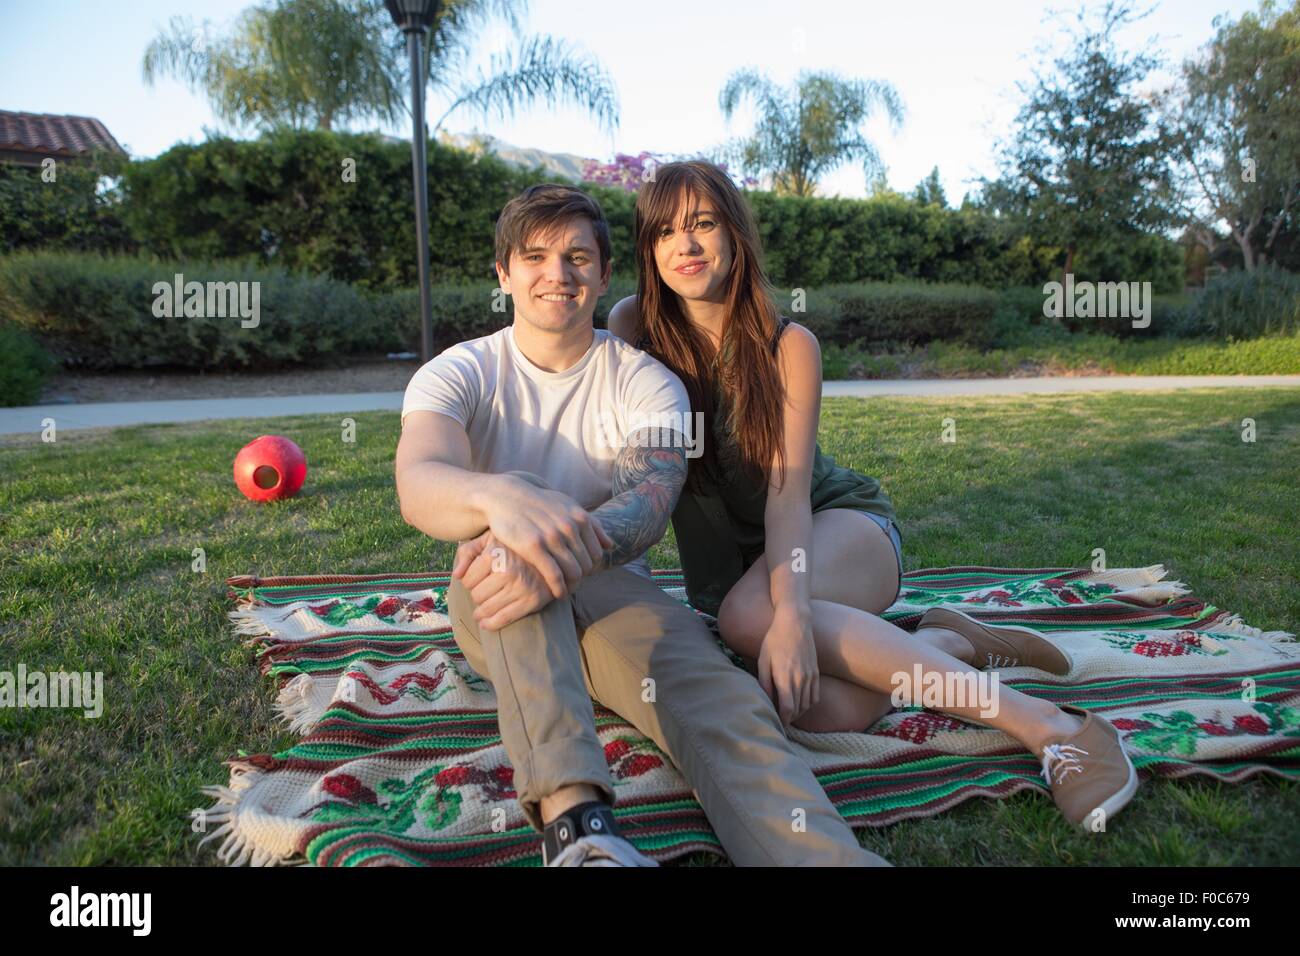 Ritratto di una giovane coppia in coperta picnic nel parco Foto Stock